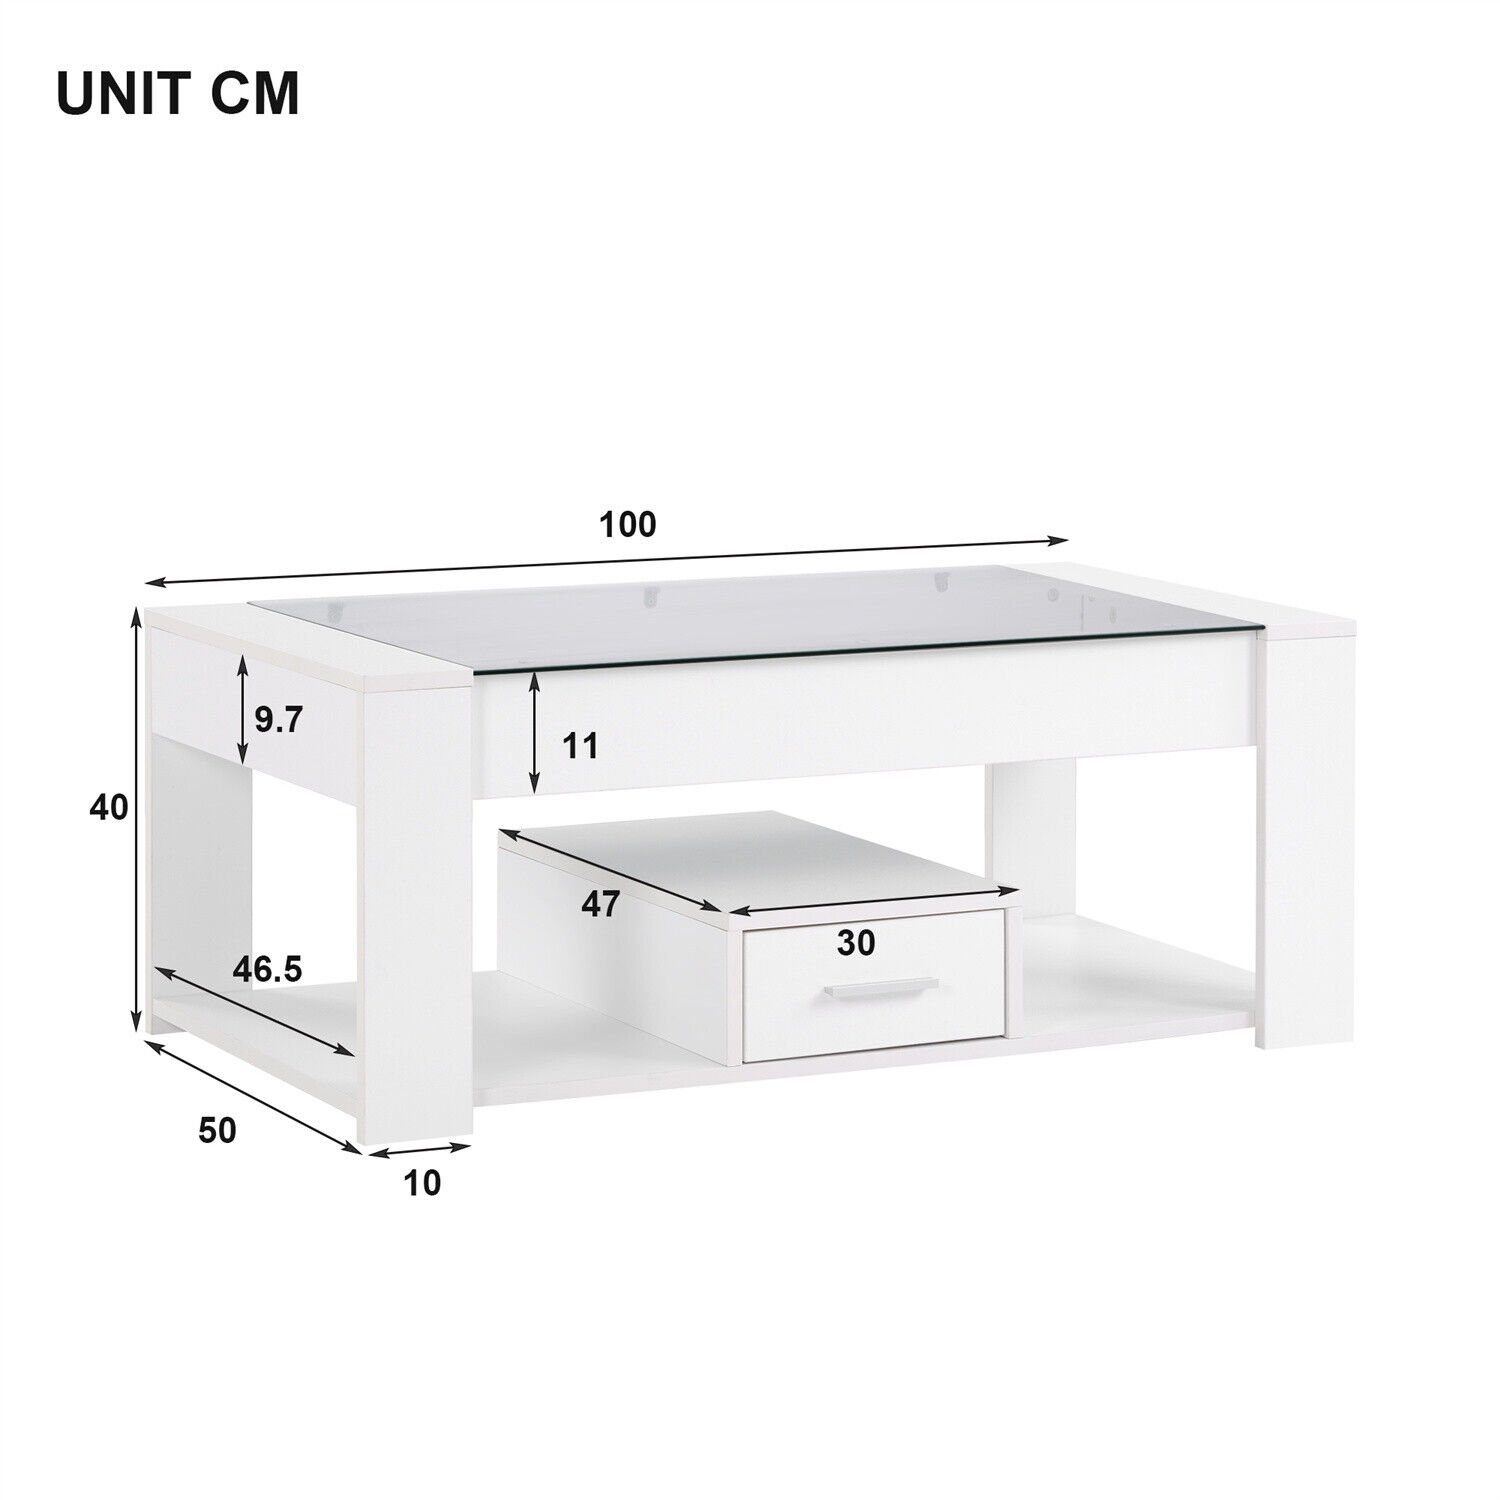 Weiß Glasplatte Stauraum Tischsitz mit Couchtisch Wohnzimmer DOTMALL